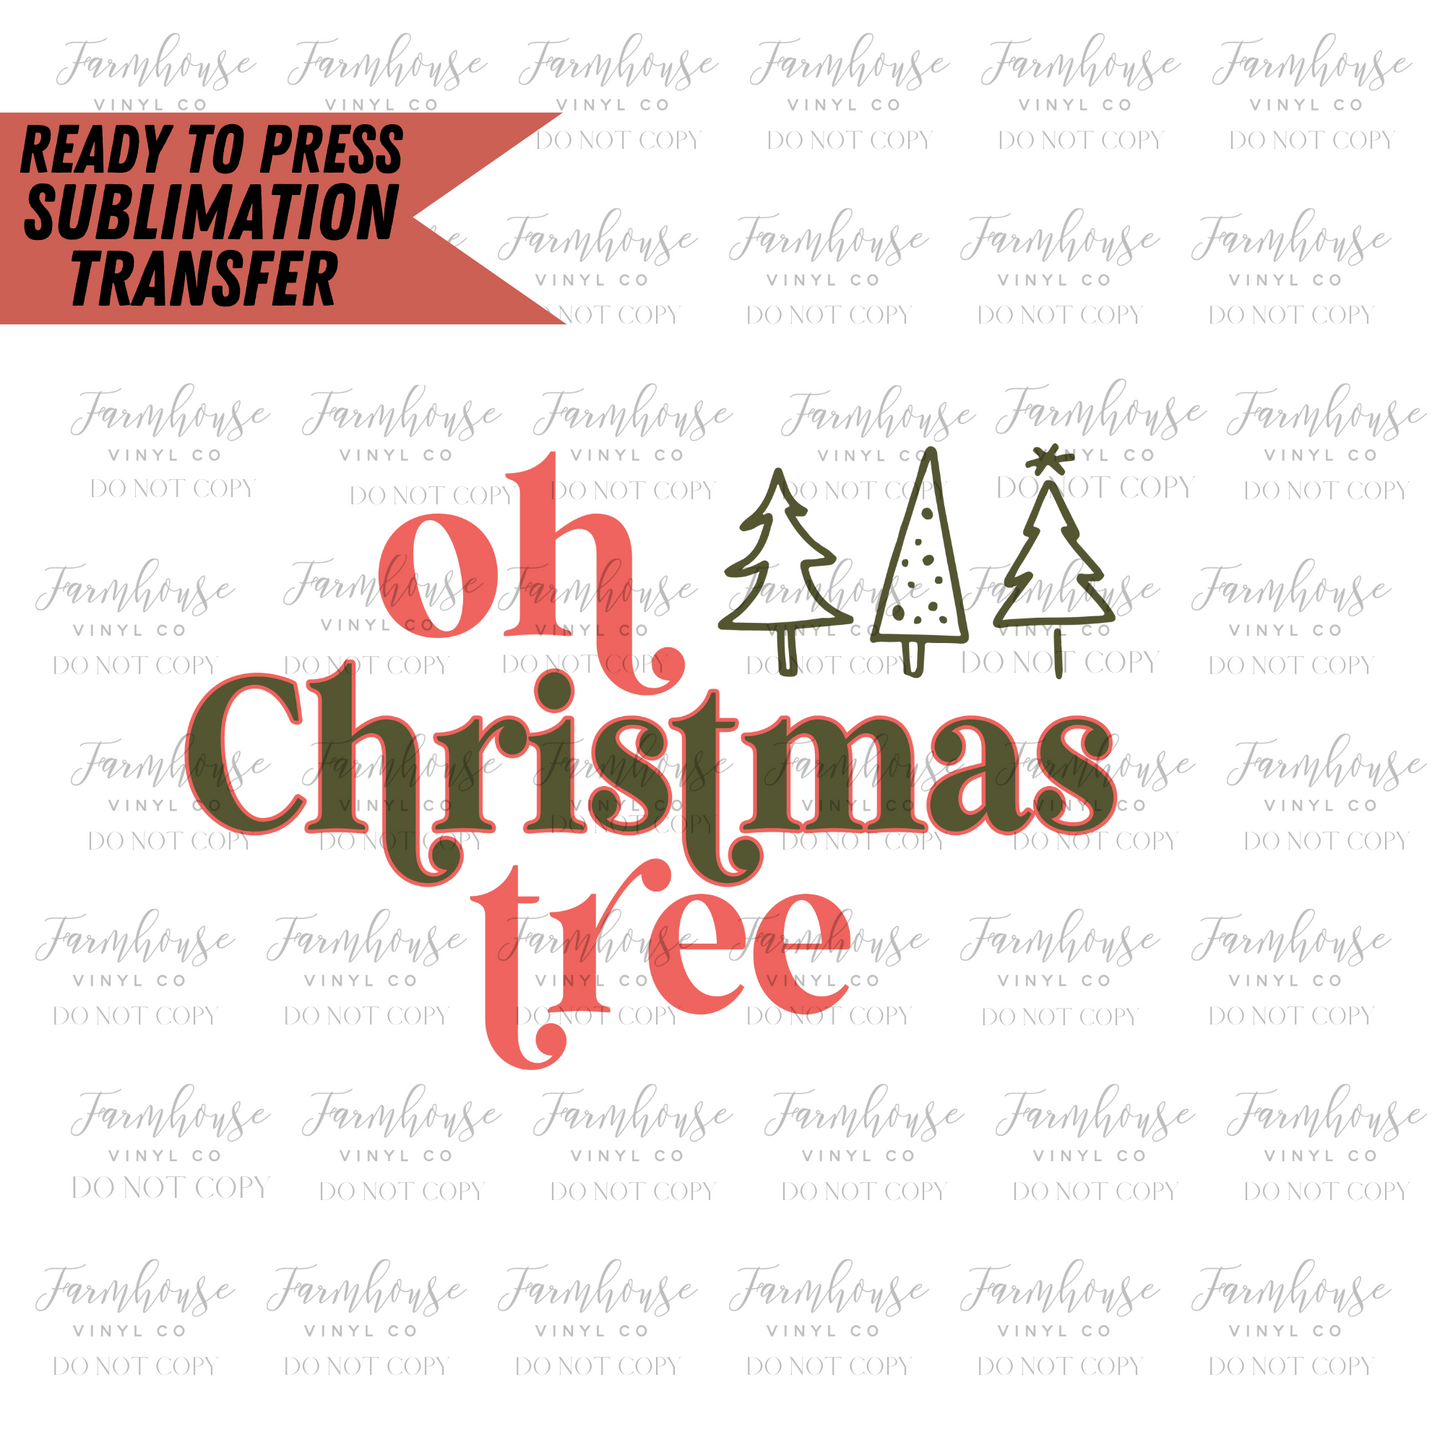 Oh Christmas Tree Trees Ready To Press Sublimation Transfer - Farmhouse Vinyl Co